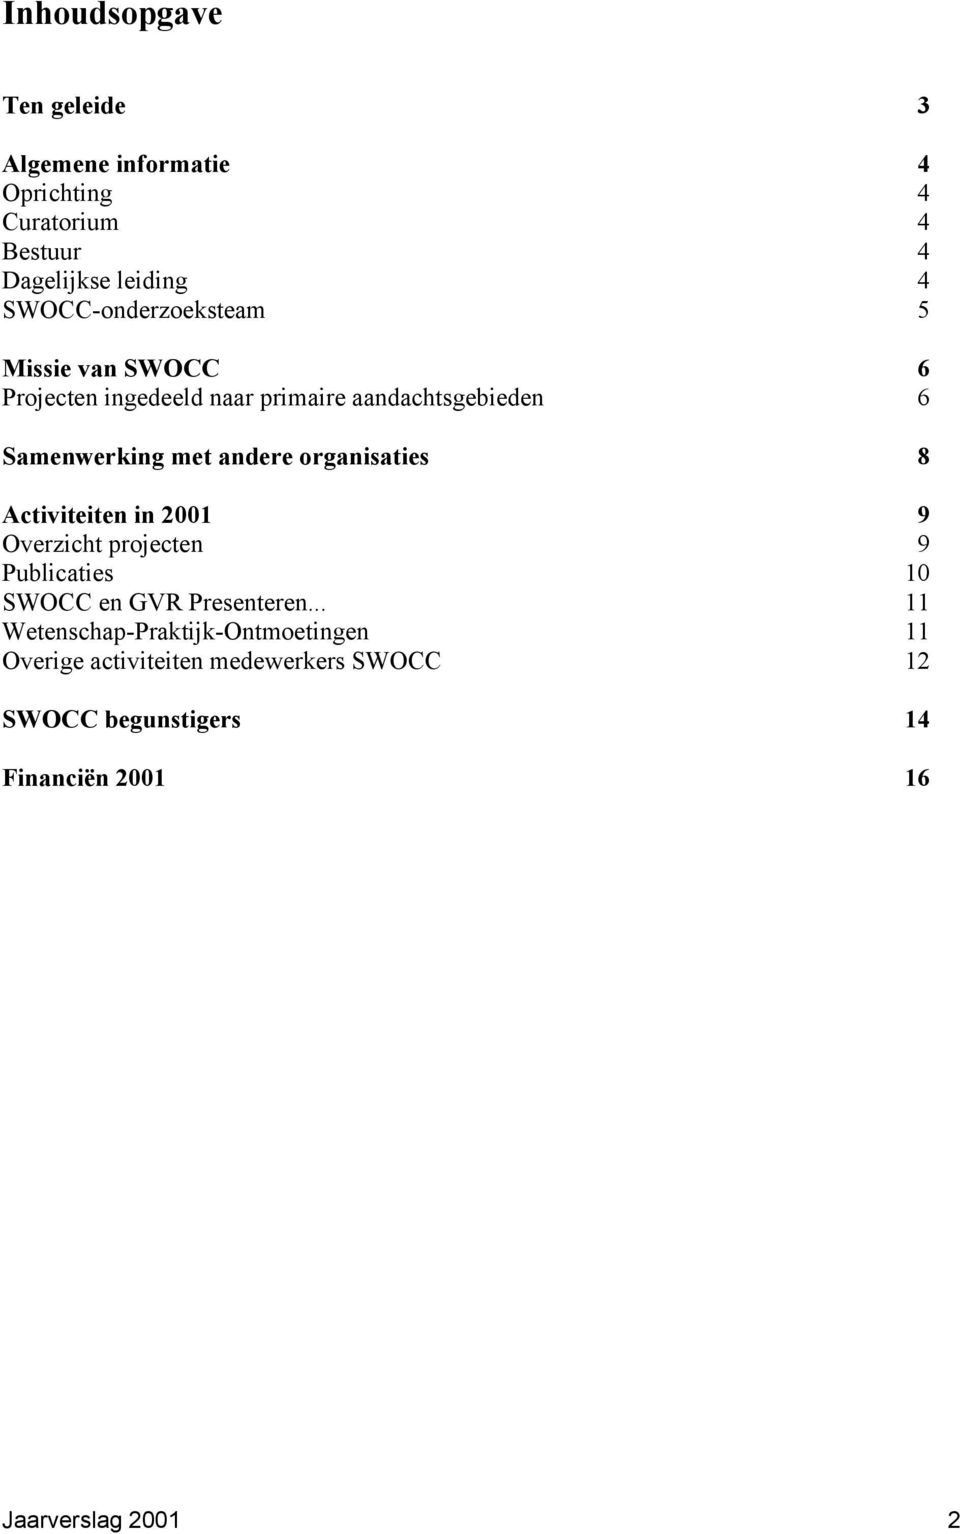 andere organisaties 8 Activiteiten in 2001 9 Overzicht projecten 9 Publicaties 10 SWOCC en GVR Presenteren.